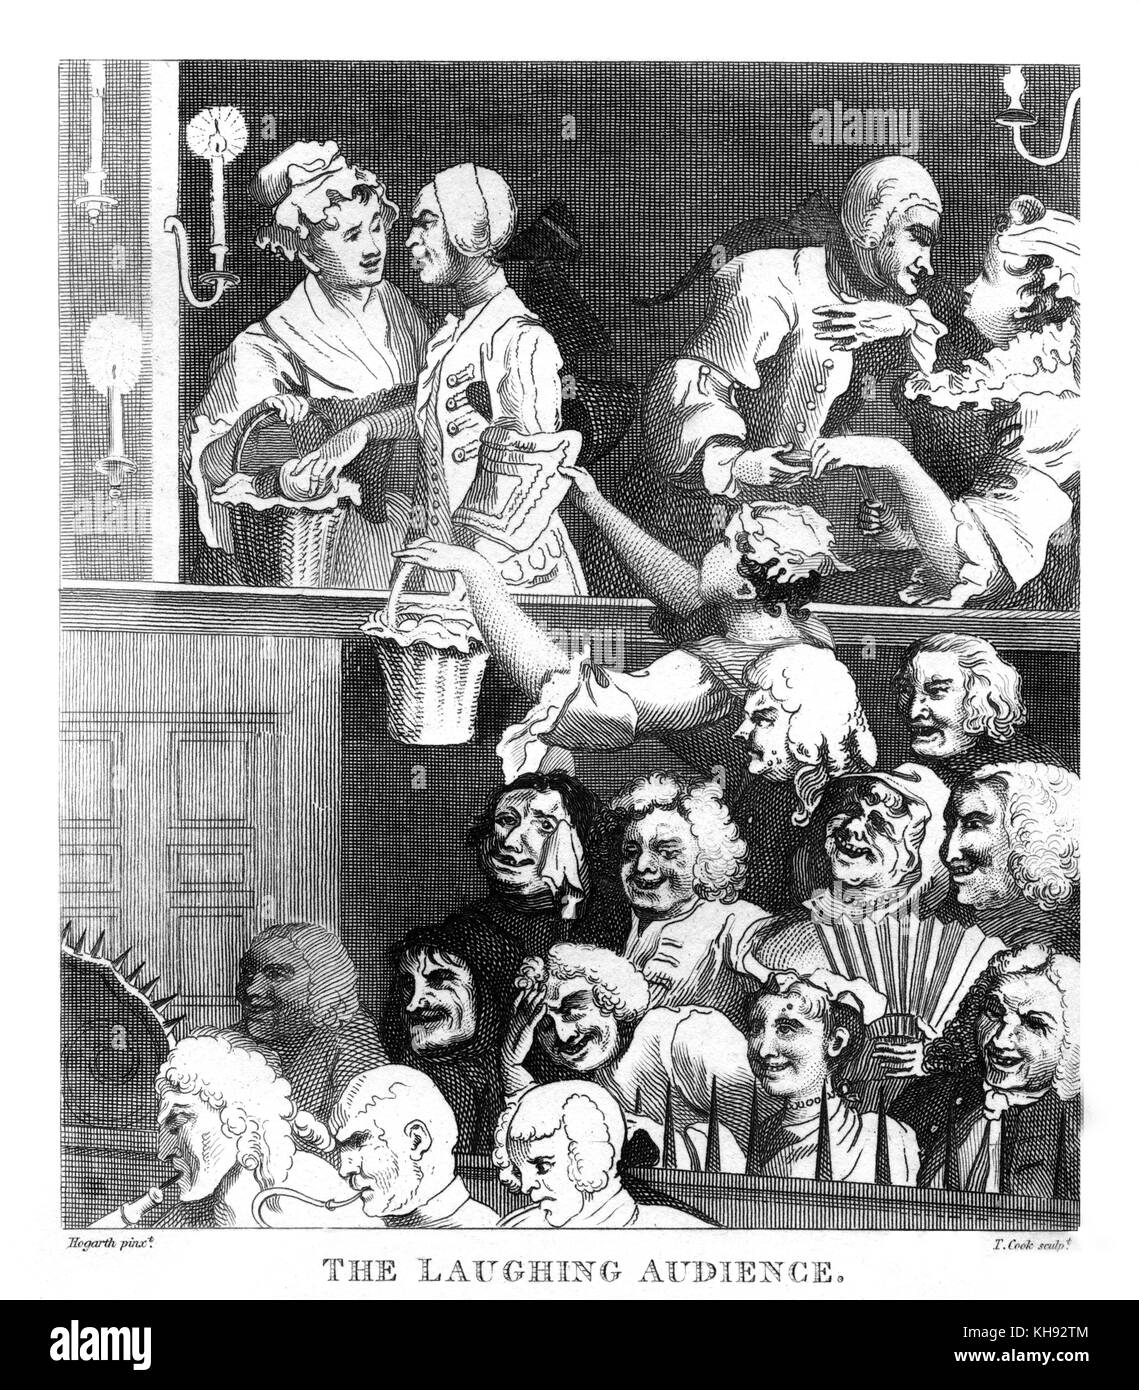 "L'auditoire de rire' par William Hogarth, 1733. Initialement appelé 'un heureux public à une Jouer'. Bénéficiant de l'auditoire au théâtre de performance, des couples de flirter, l'auditoire en extase. Banque D'Images